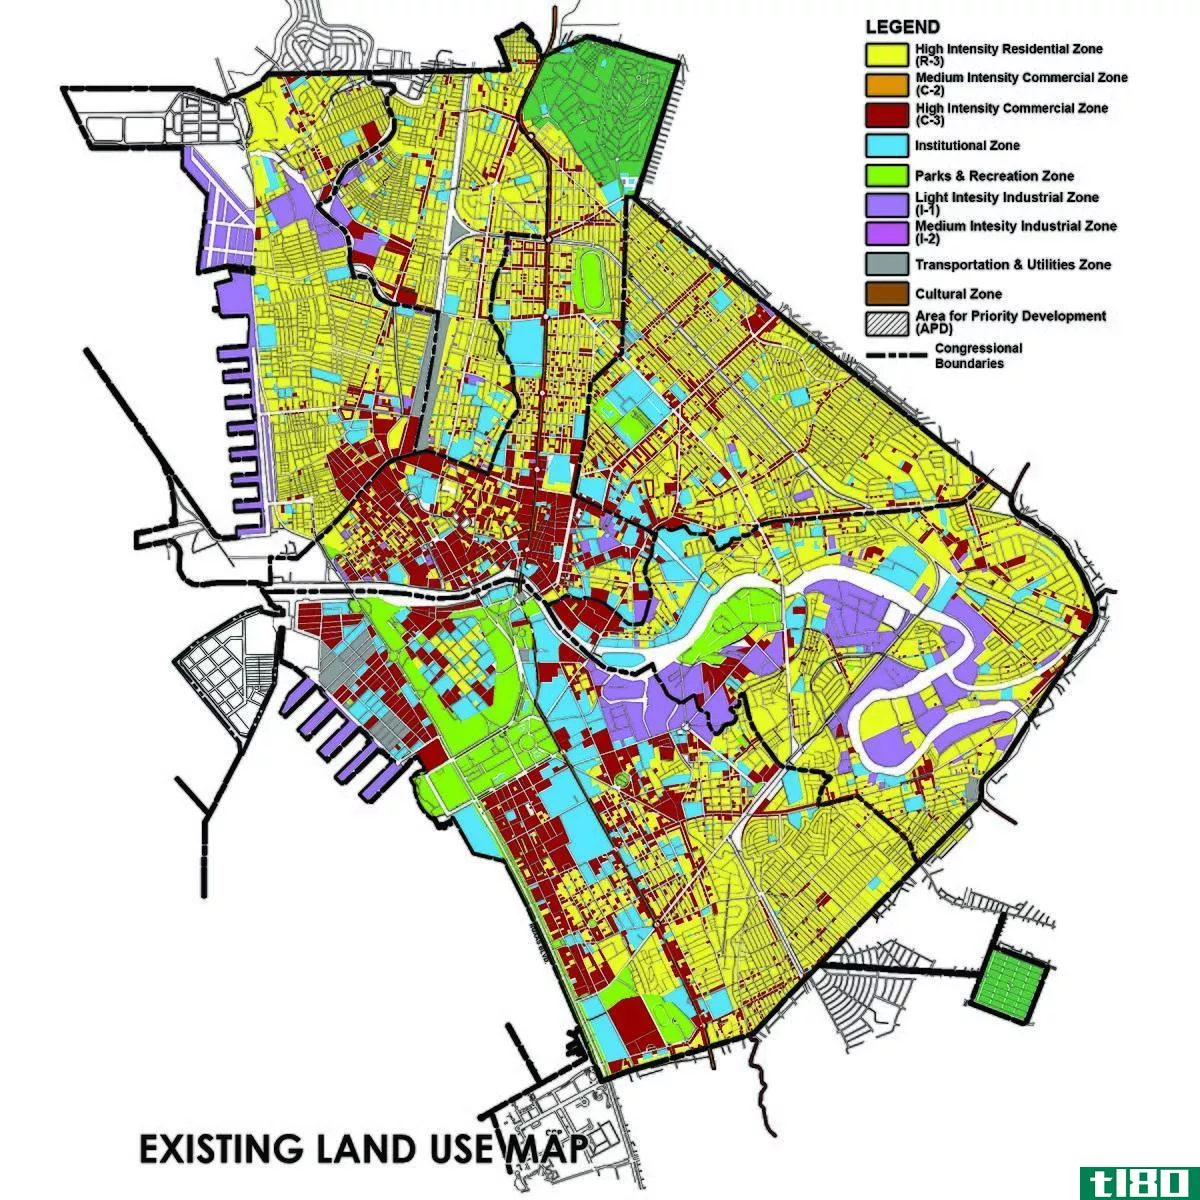 土地利用(land use)和分区(zoning)的区别